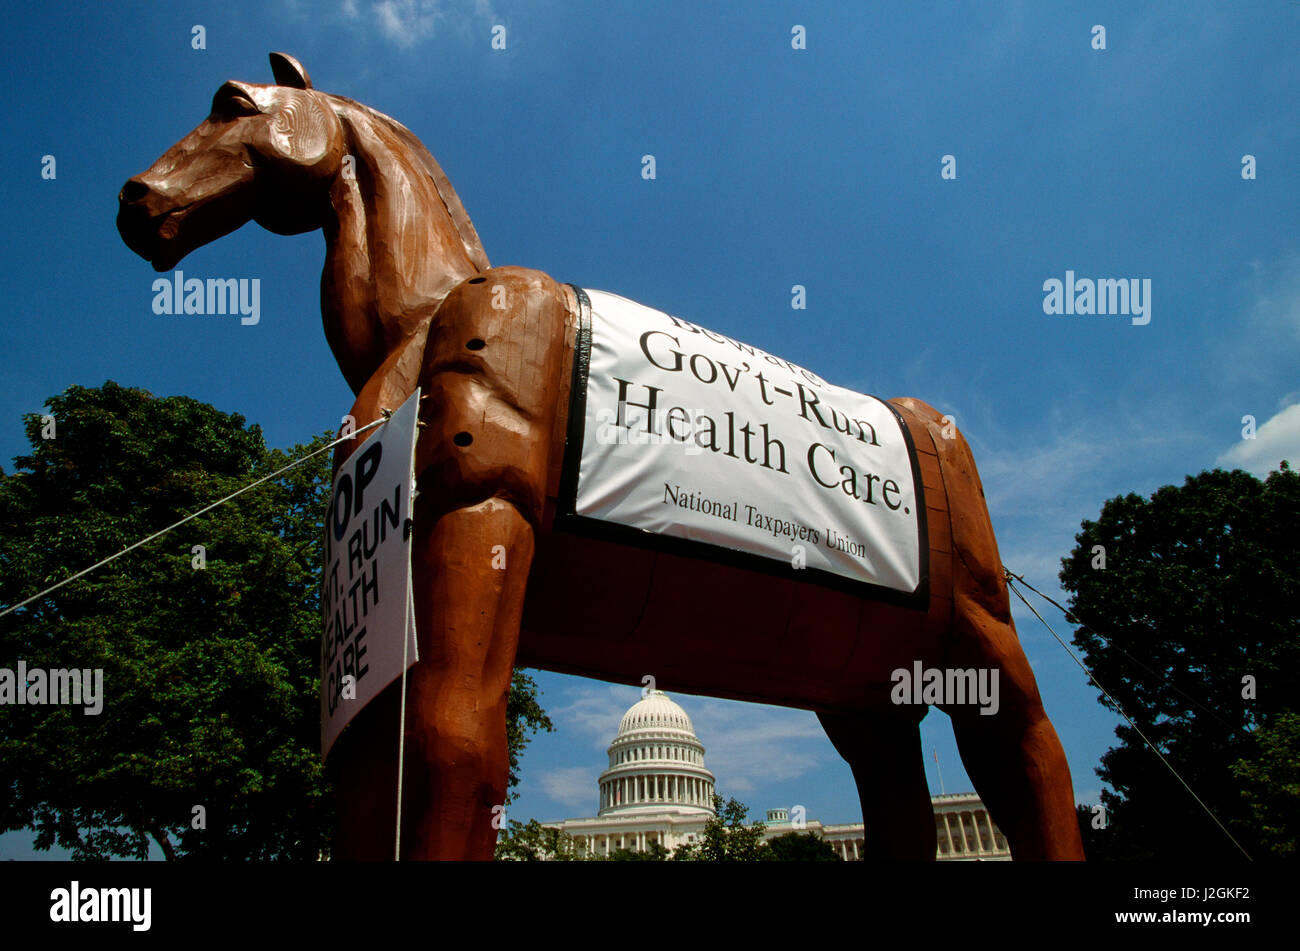 Un cheval de Troie caché symbolisant des coûts de la santé et financé par l'Union nationale des contribuables en août 1997, Washington DC Banque D'Images